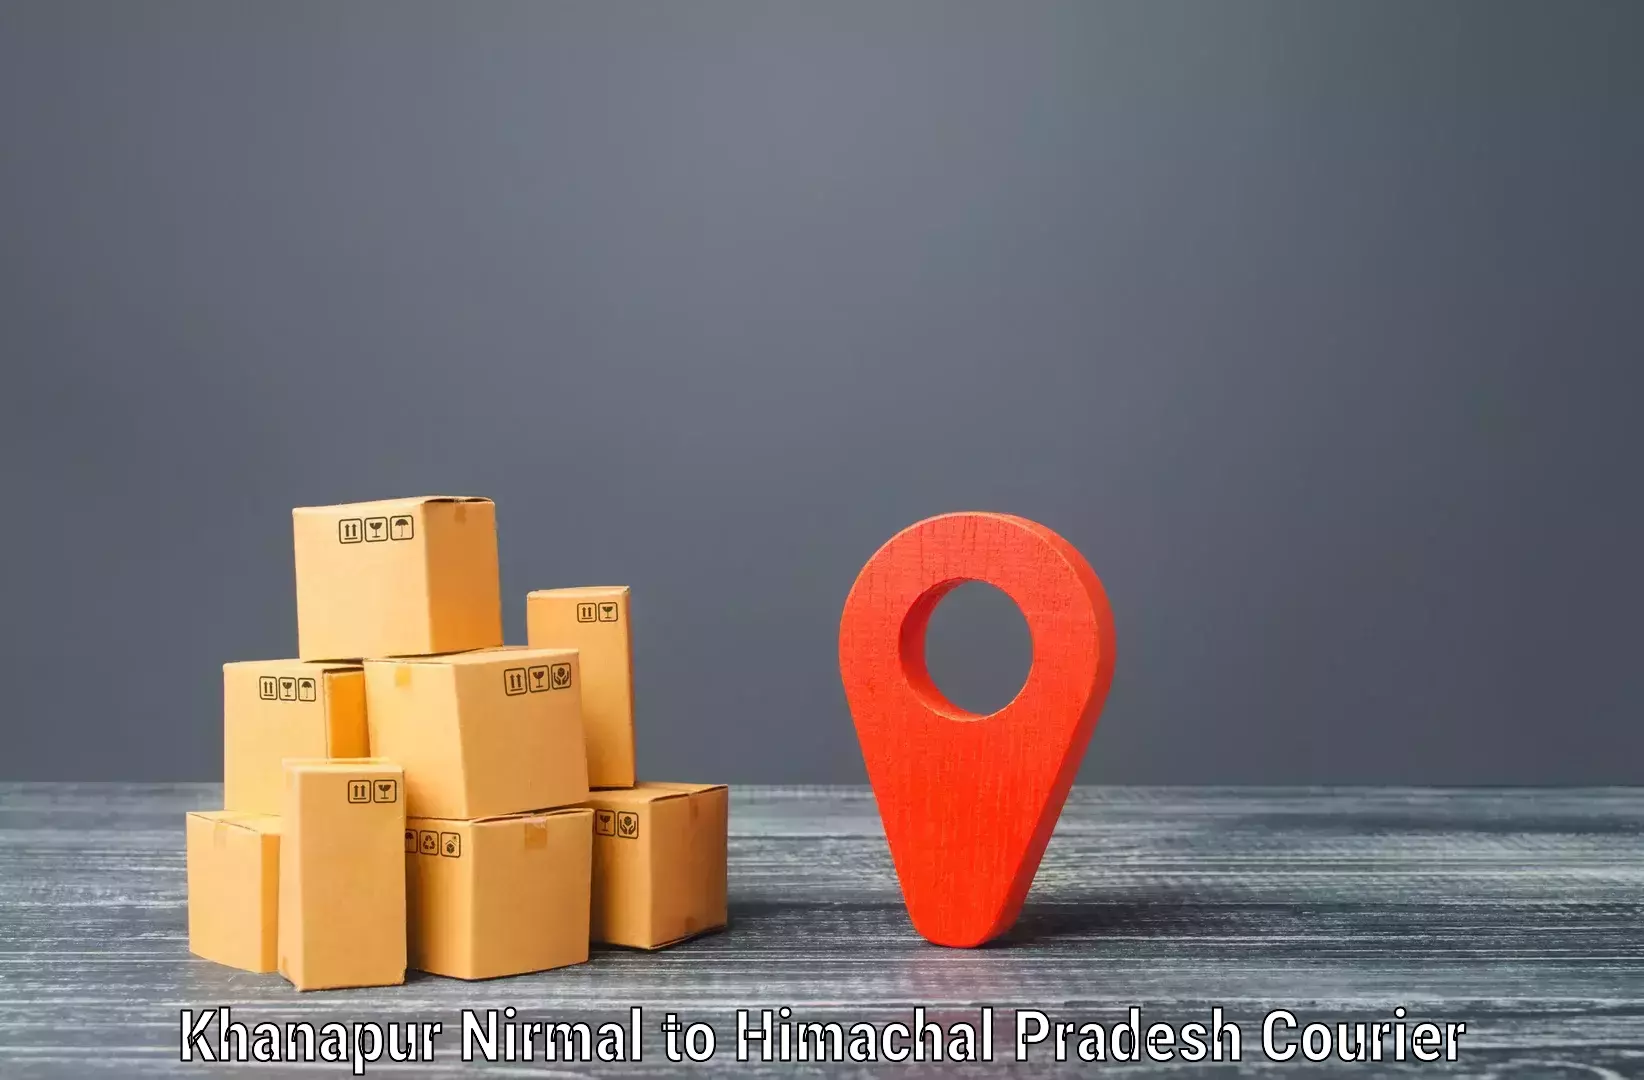 Premium courier services Khanapur Nirmal to Jaisinghpur